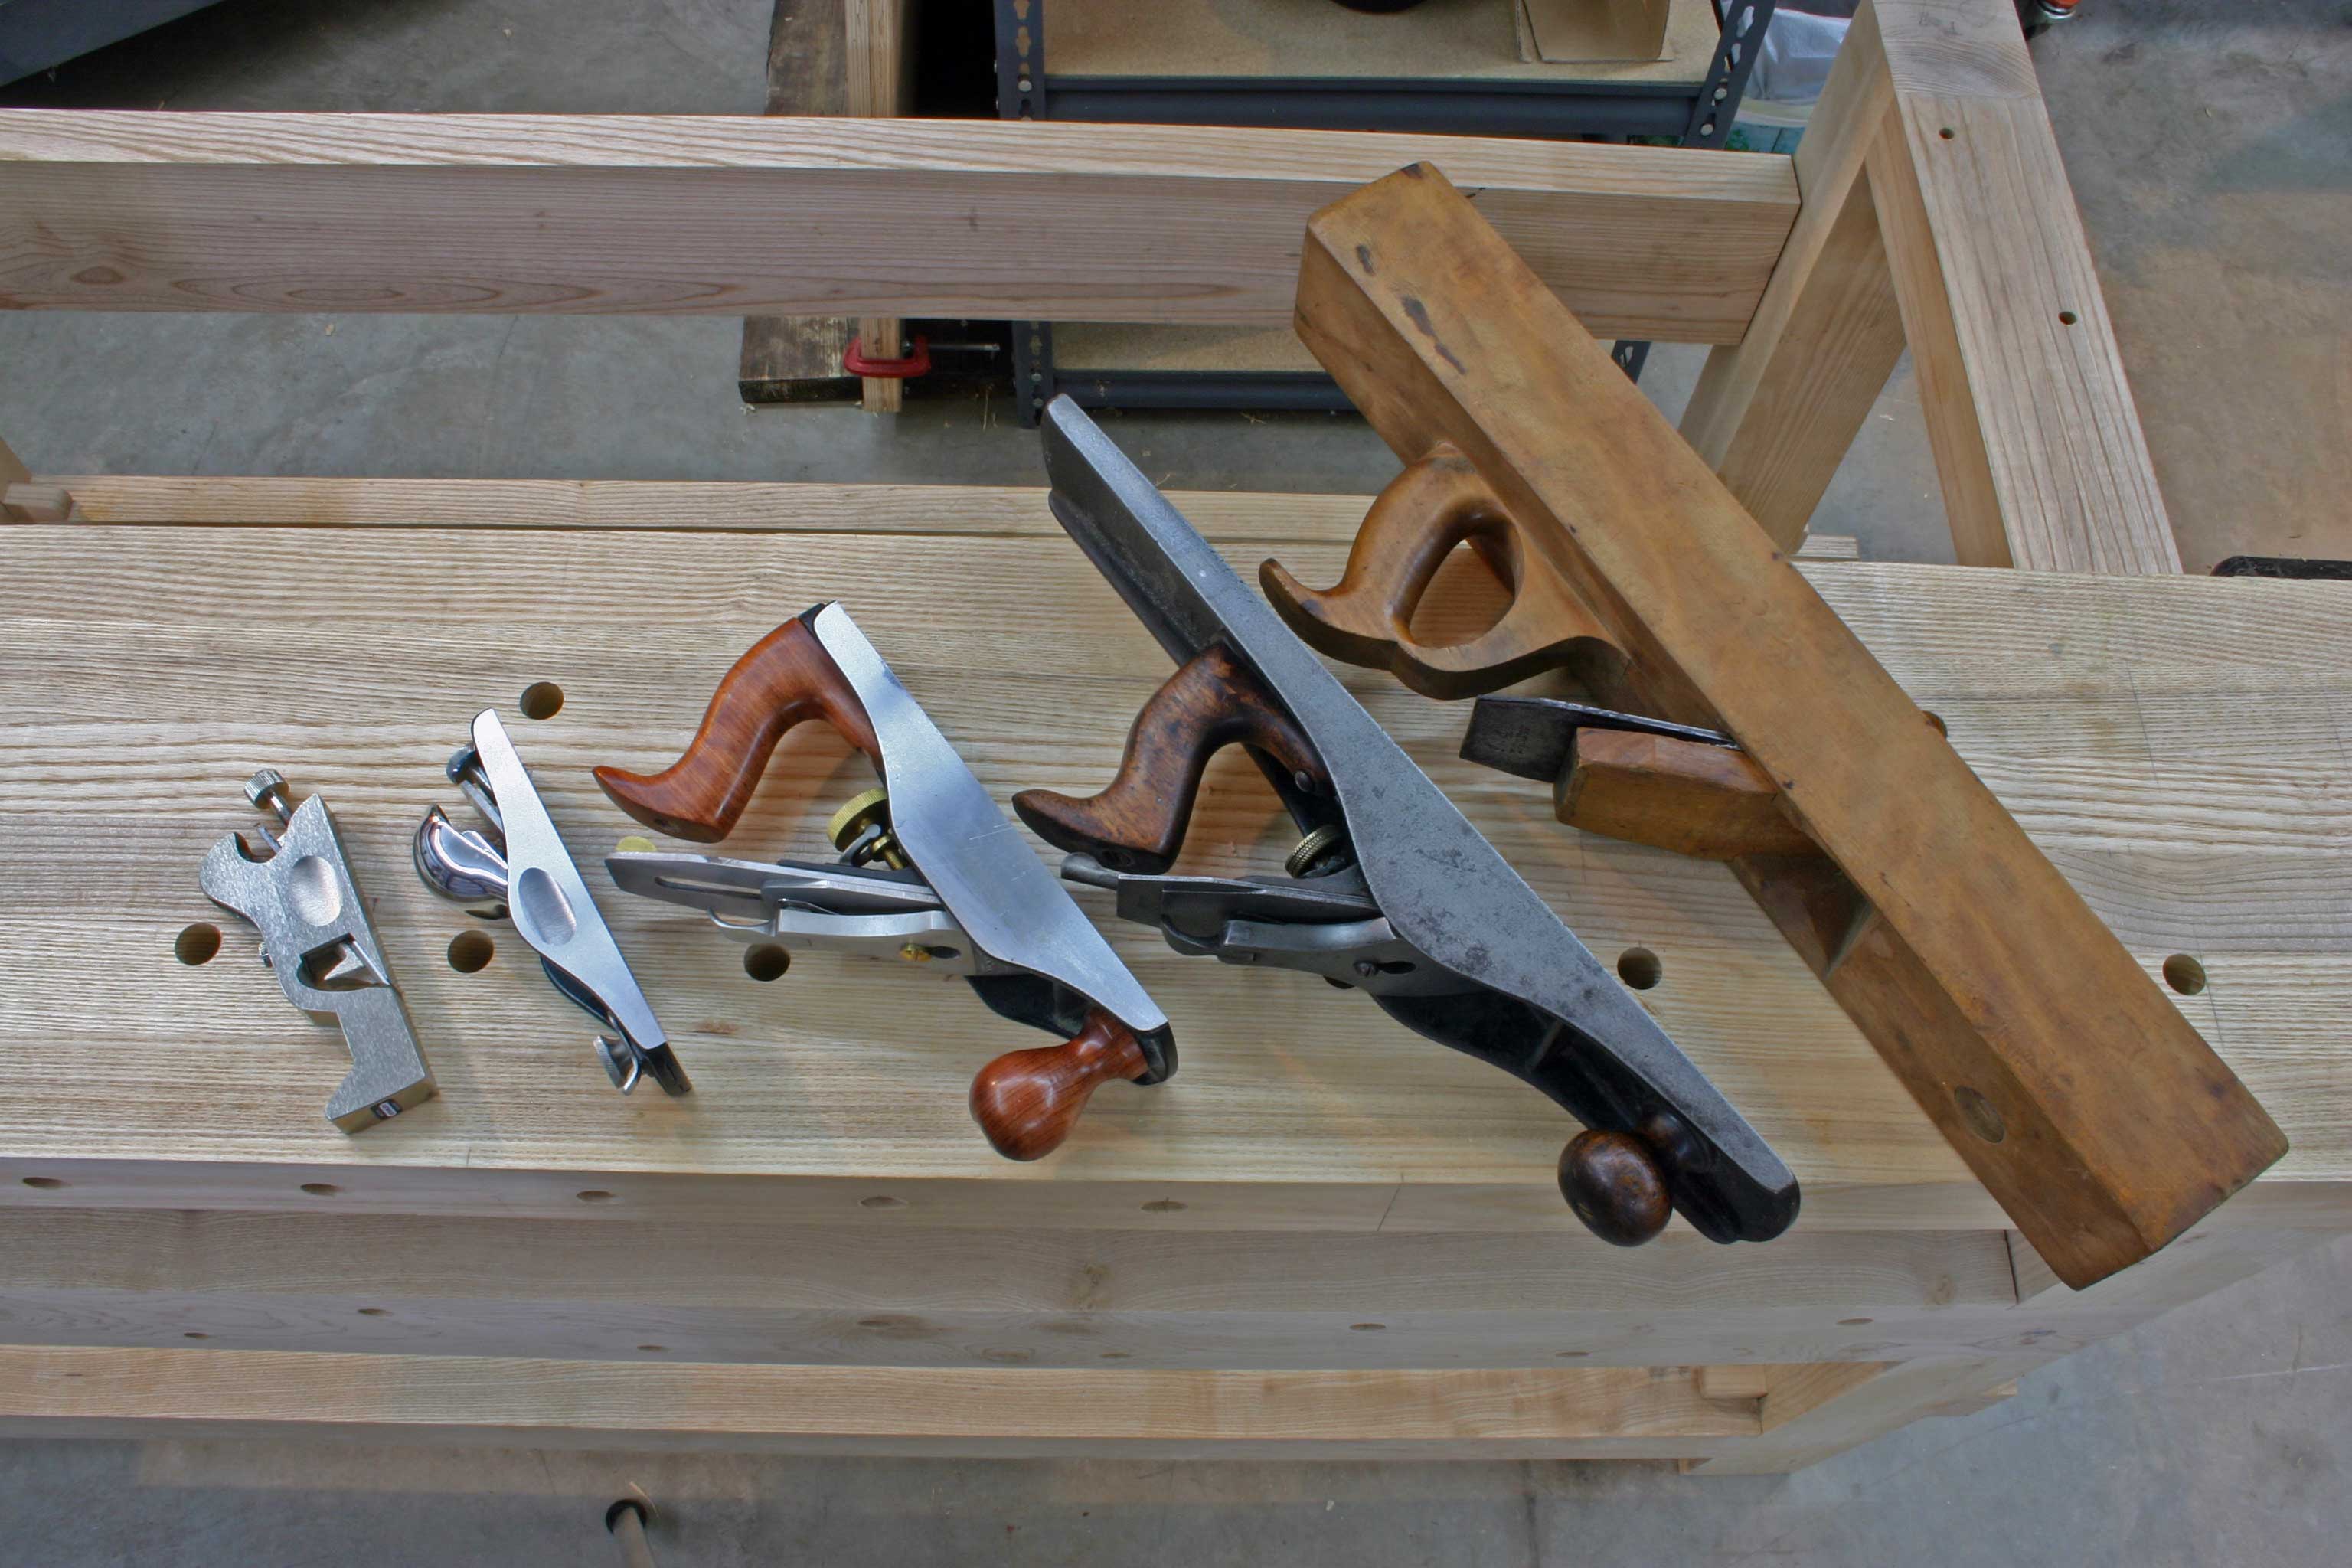 Wood Shop Woodworking bench vise craigslist